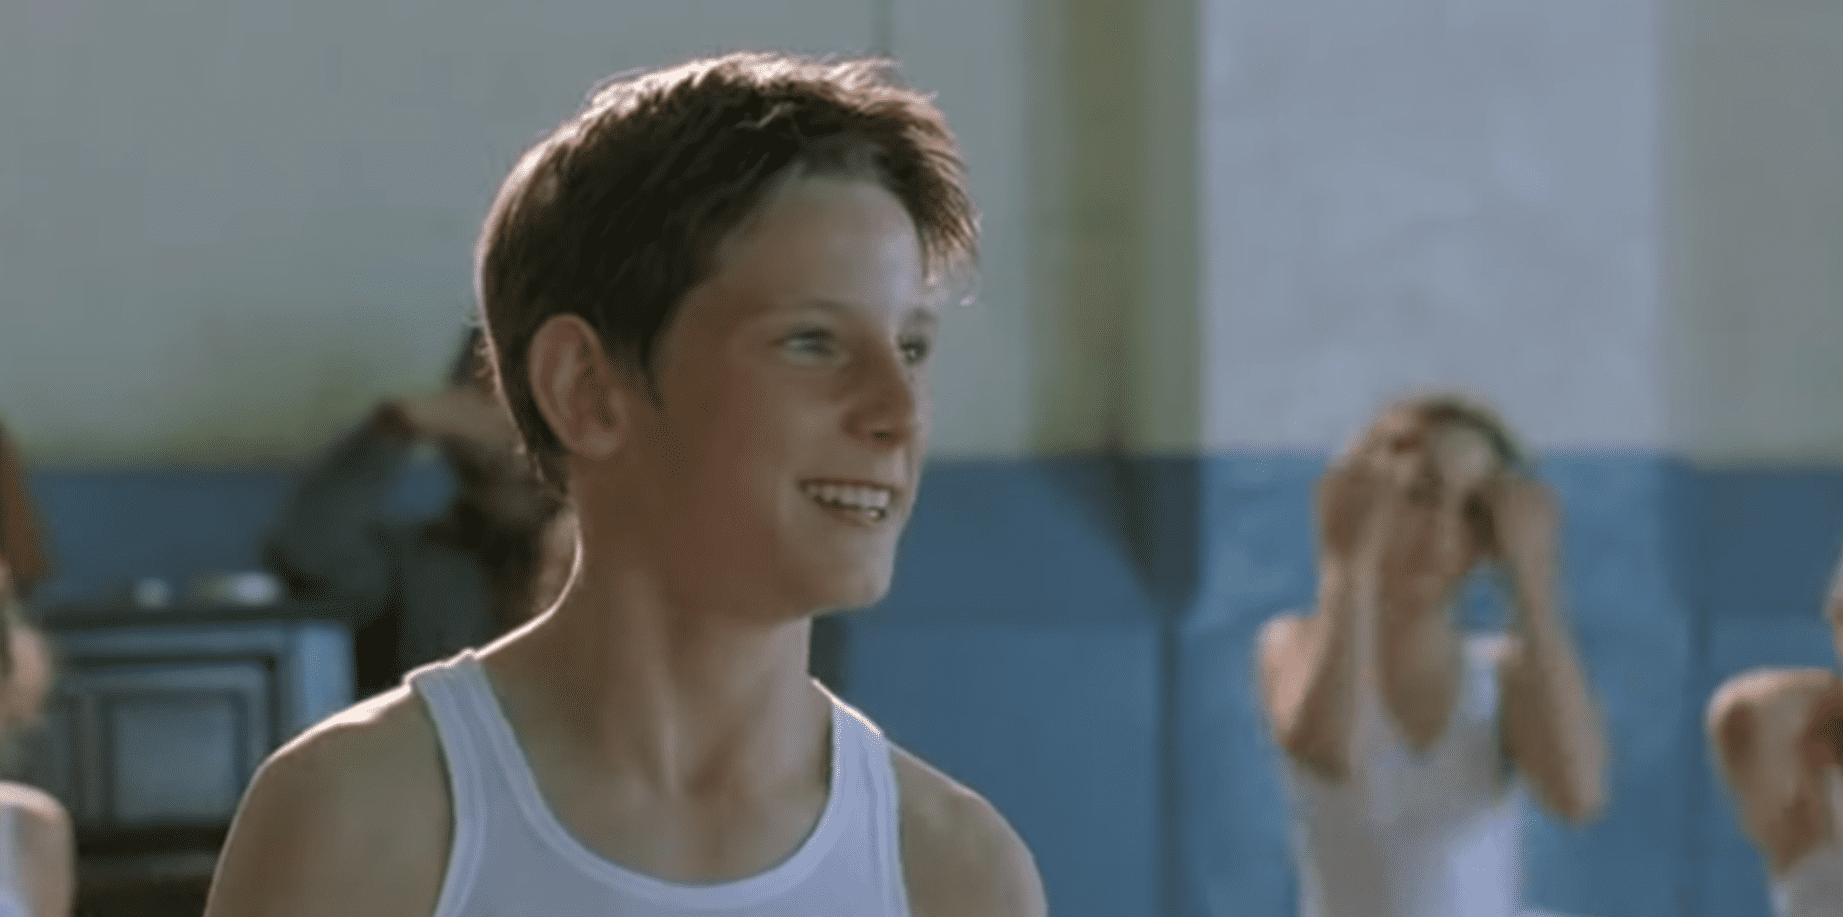 Escena de la película 'Billy Elliot'. | Foto: YouTube/Movieclips